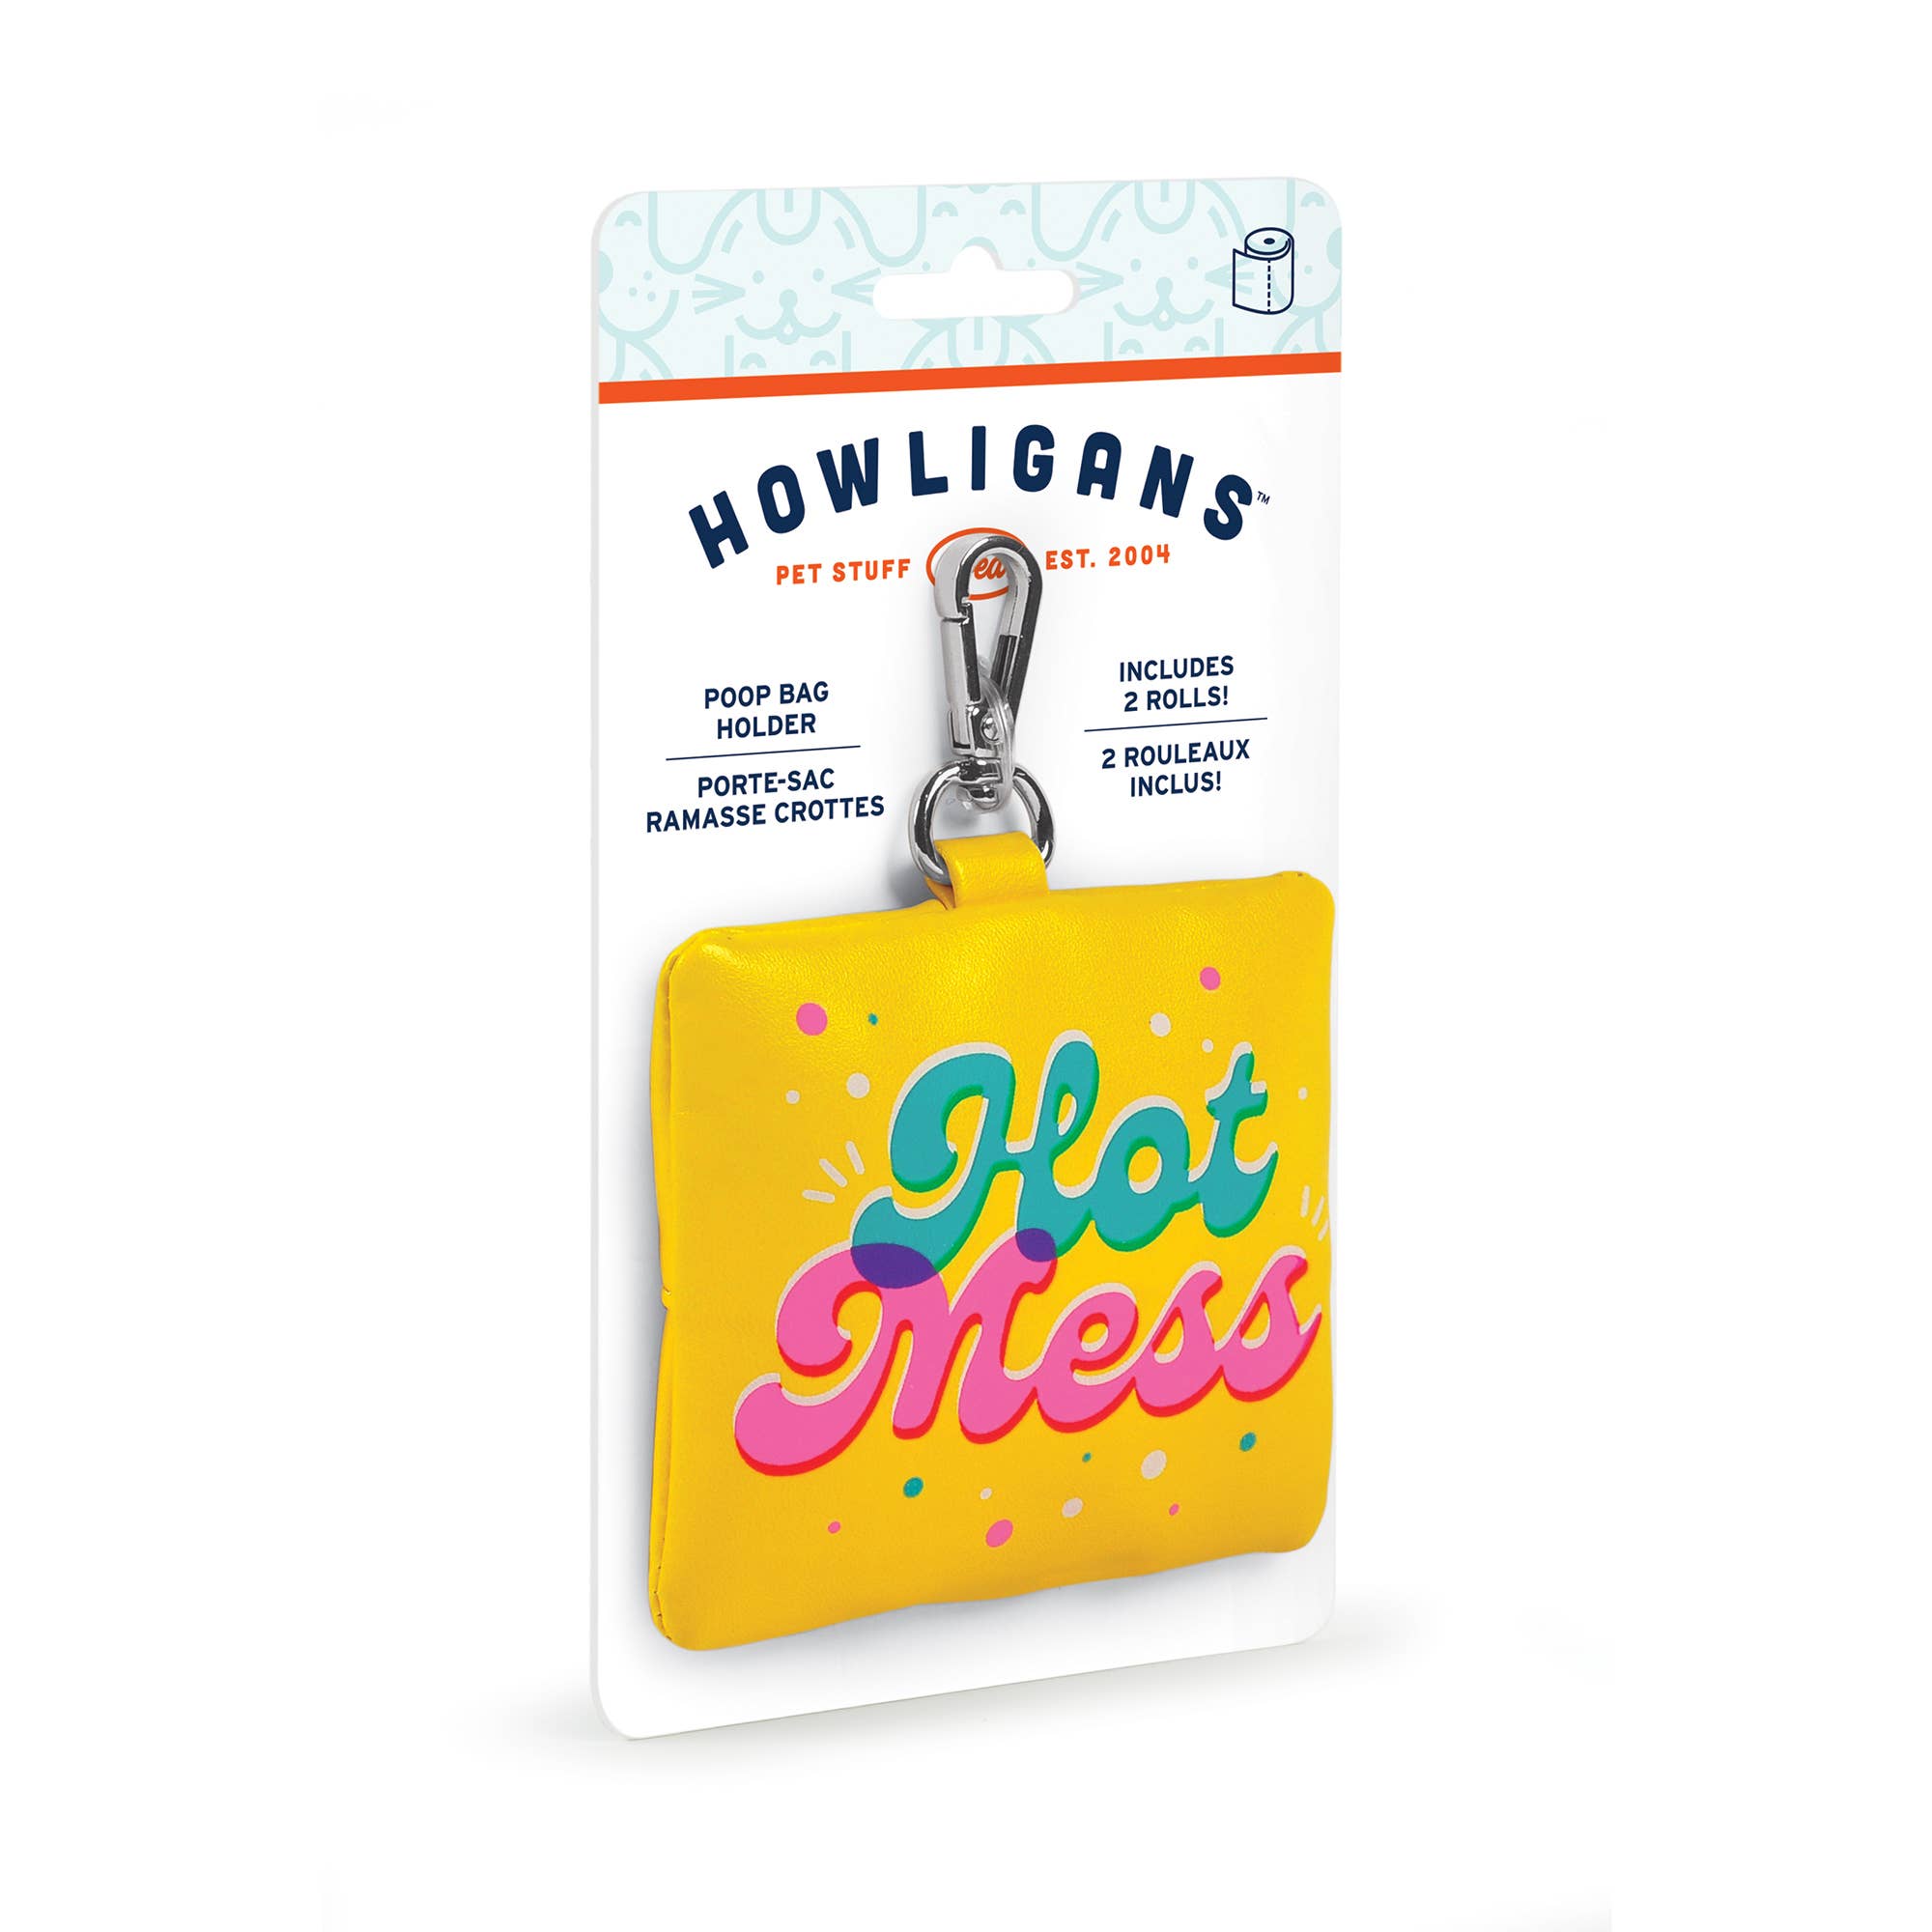 Fred & Friends Howligans- Poop Bag Holder - Hot Mess